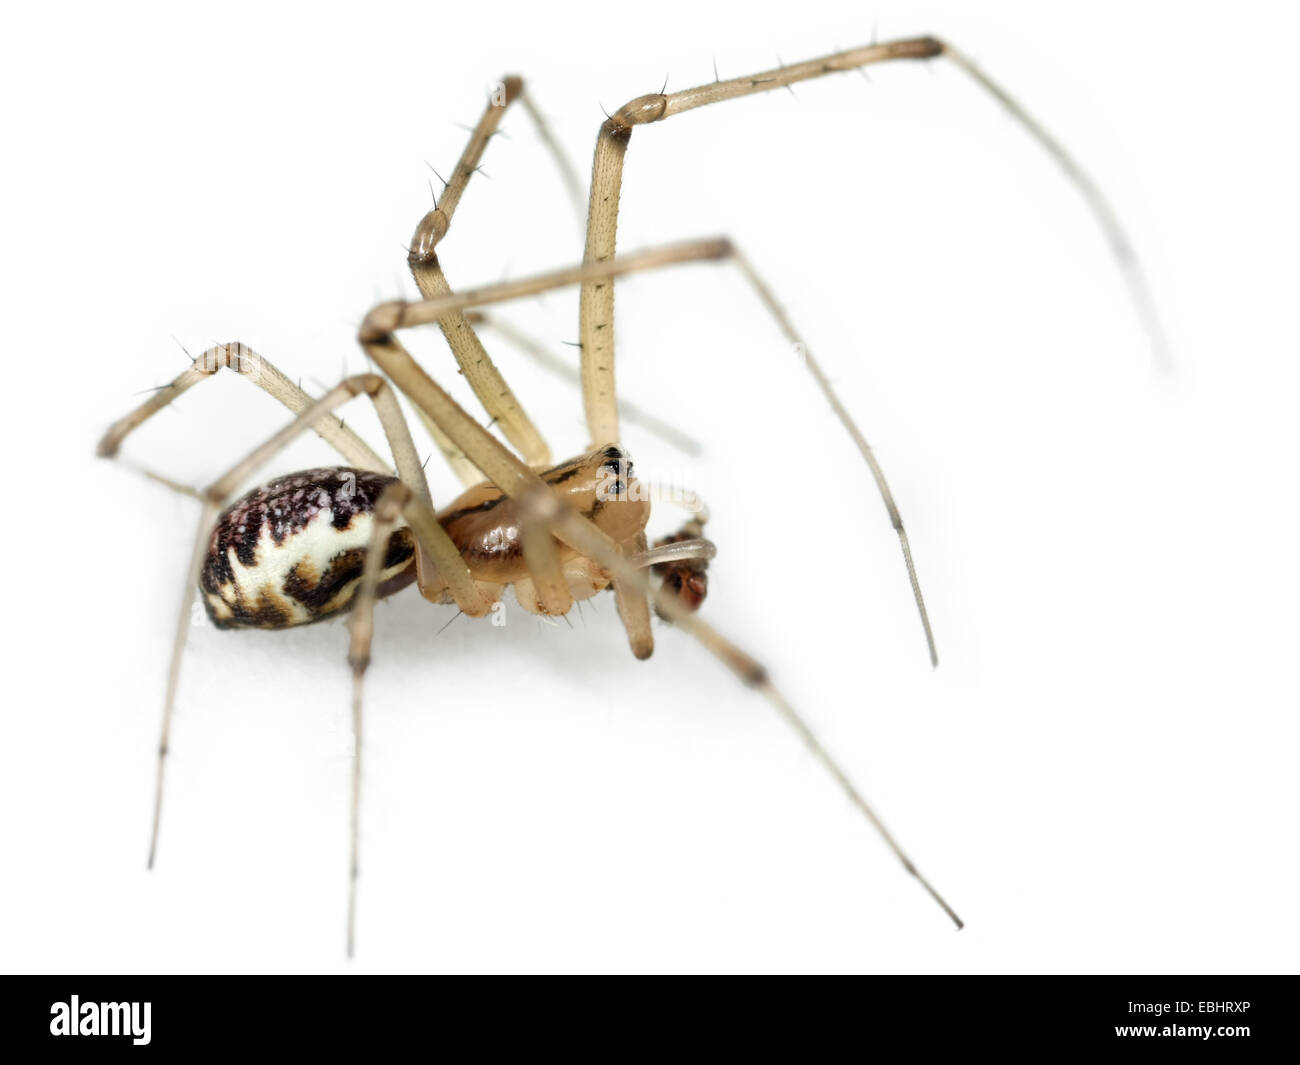 Un hombre común Hamaca-Weaver (Linyphia triangularis araña) sobre un fondo blanco, parte de la familia Linyphiidae - Sheetweb tejedores. Foto de stock